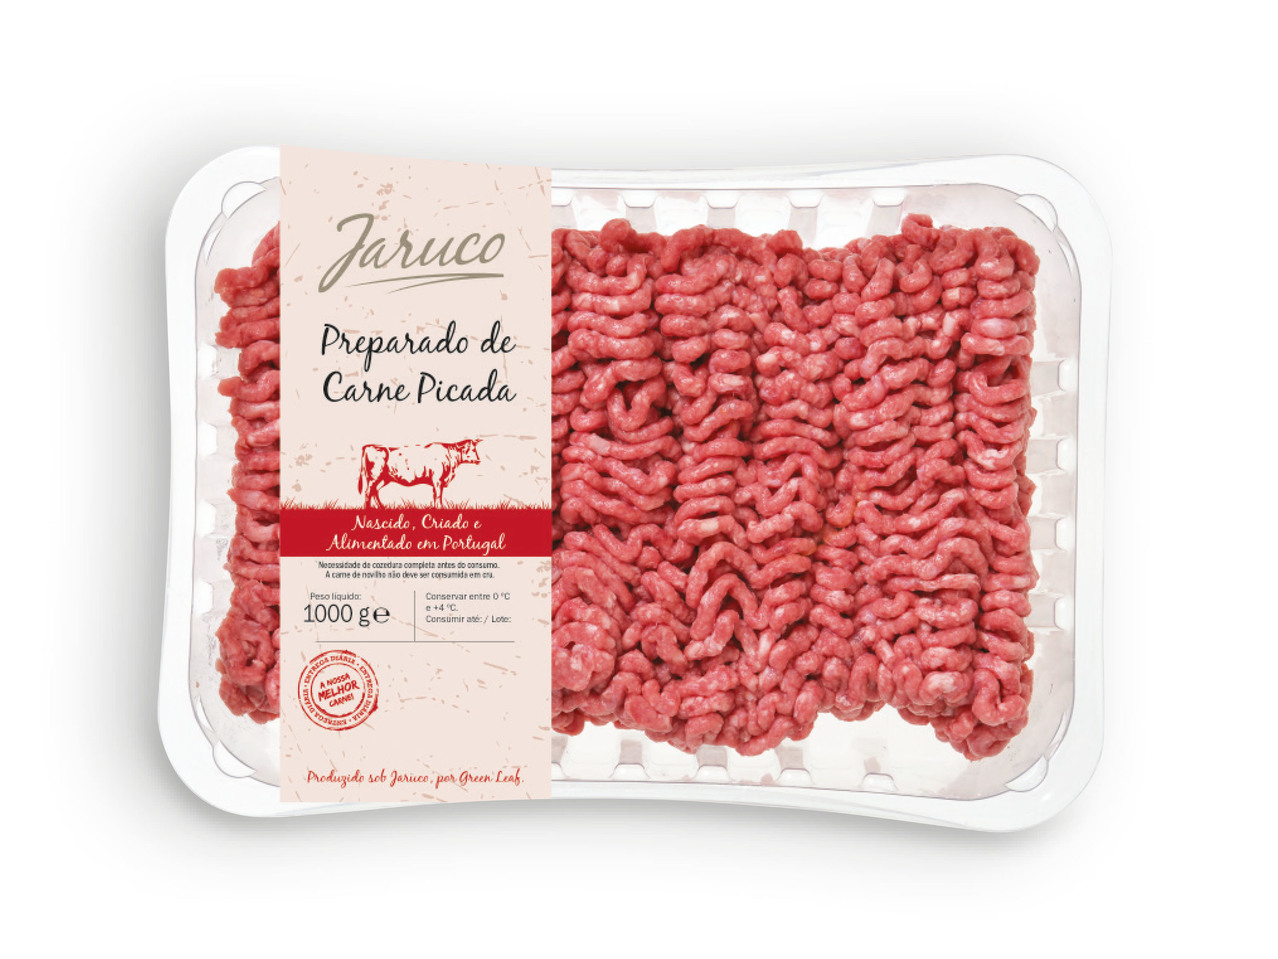 JARUCO(R) Preparado de Carne Picada de Bovino